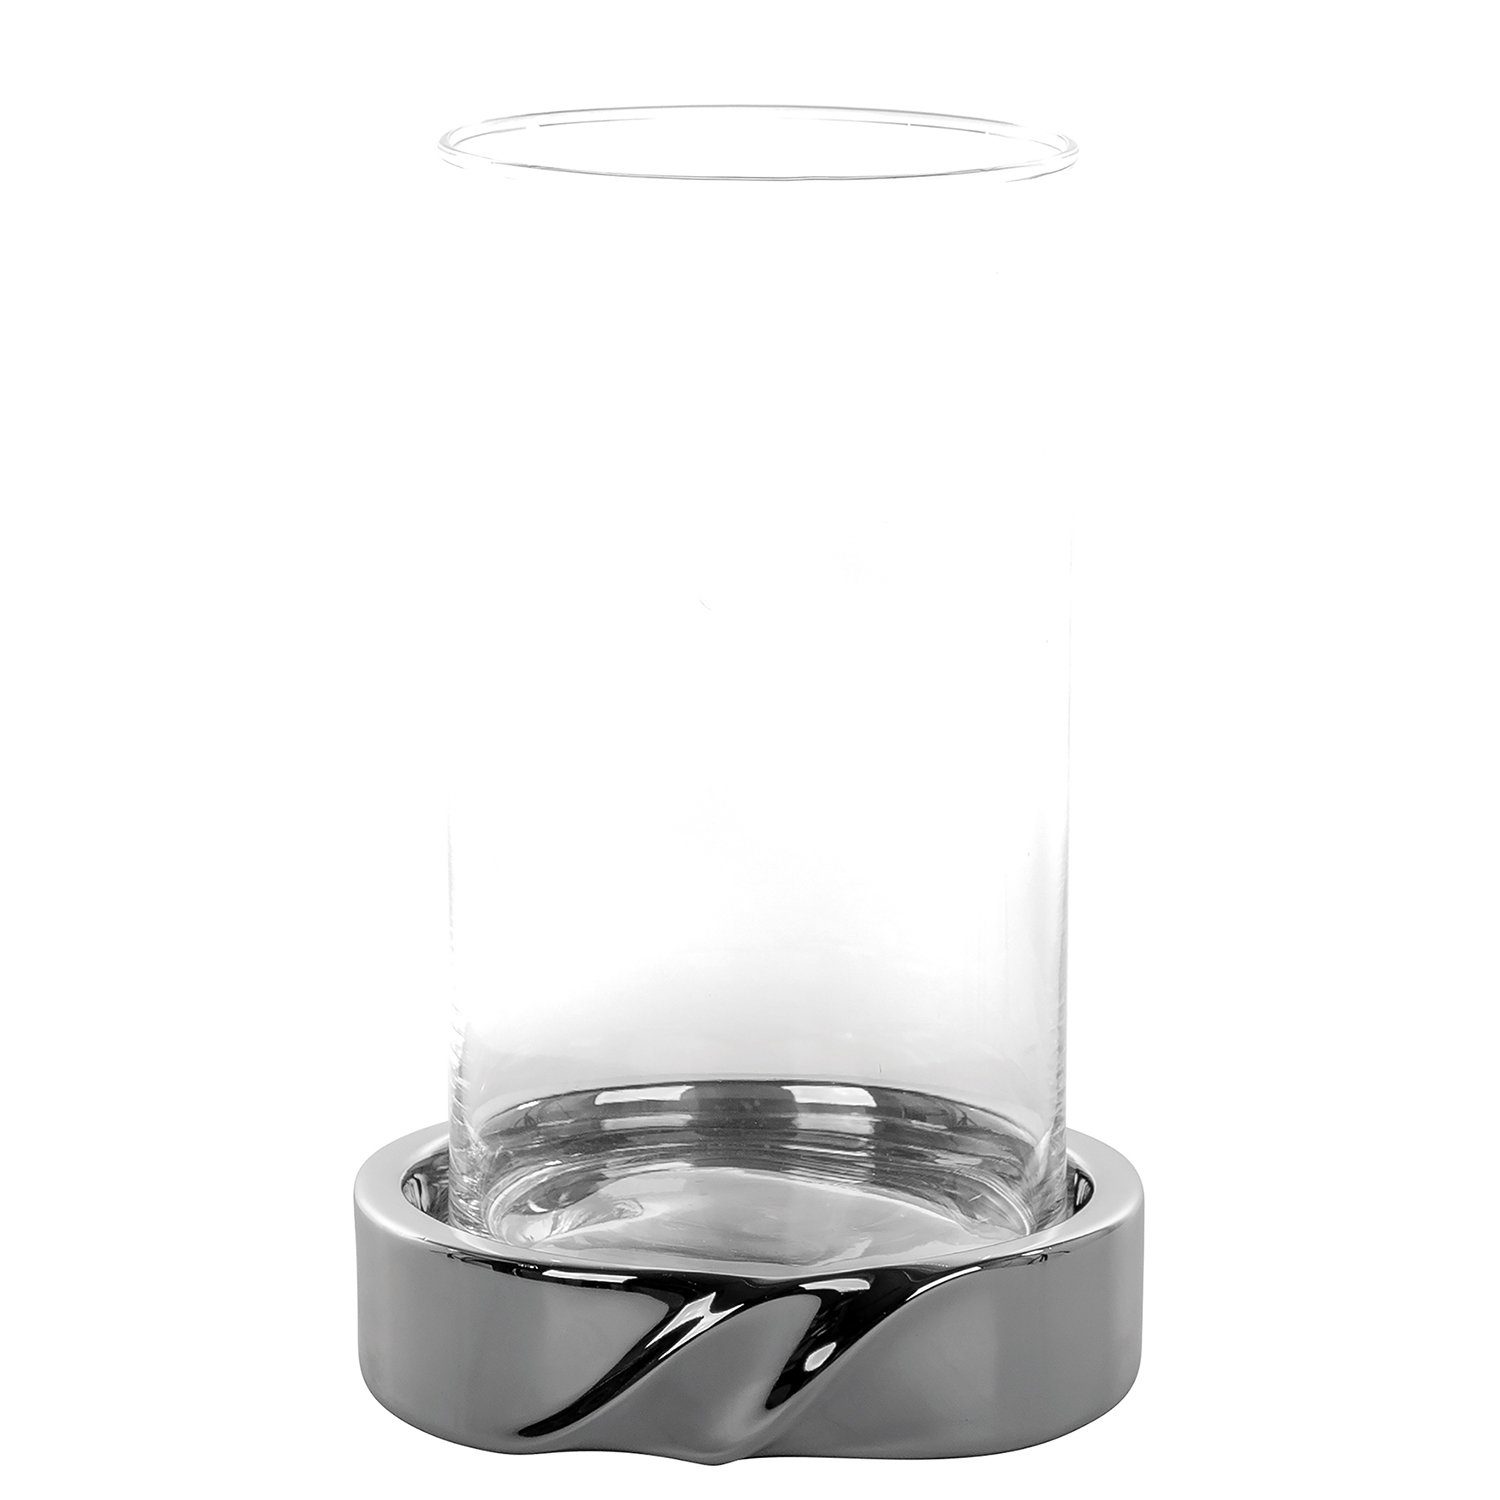 Fink Windlicht Windlicht LE DECOR - silberfarben - Keramik - Glas - H.24,5cm x Ø 15cm (Keramikbasis + Glas), nicht outdoorgeeignet